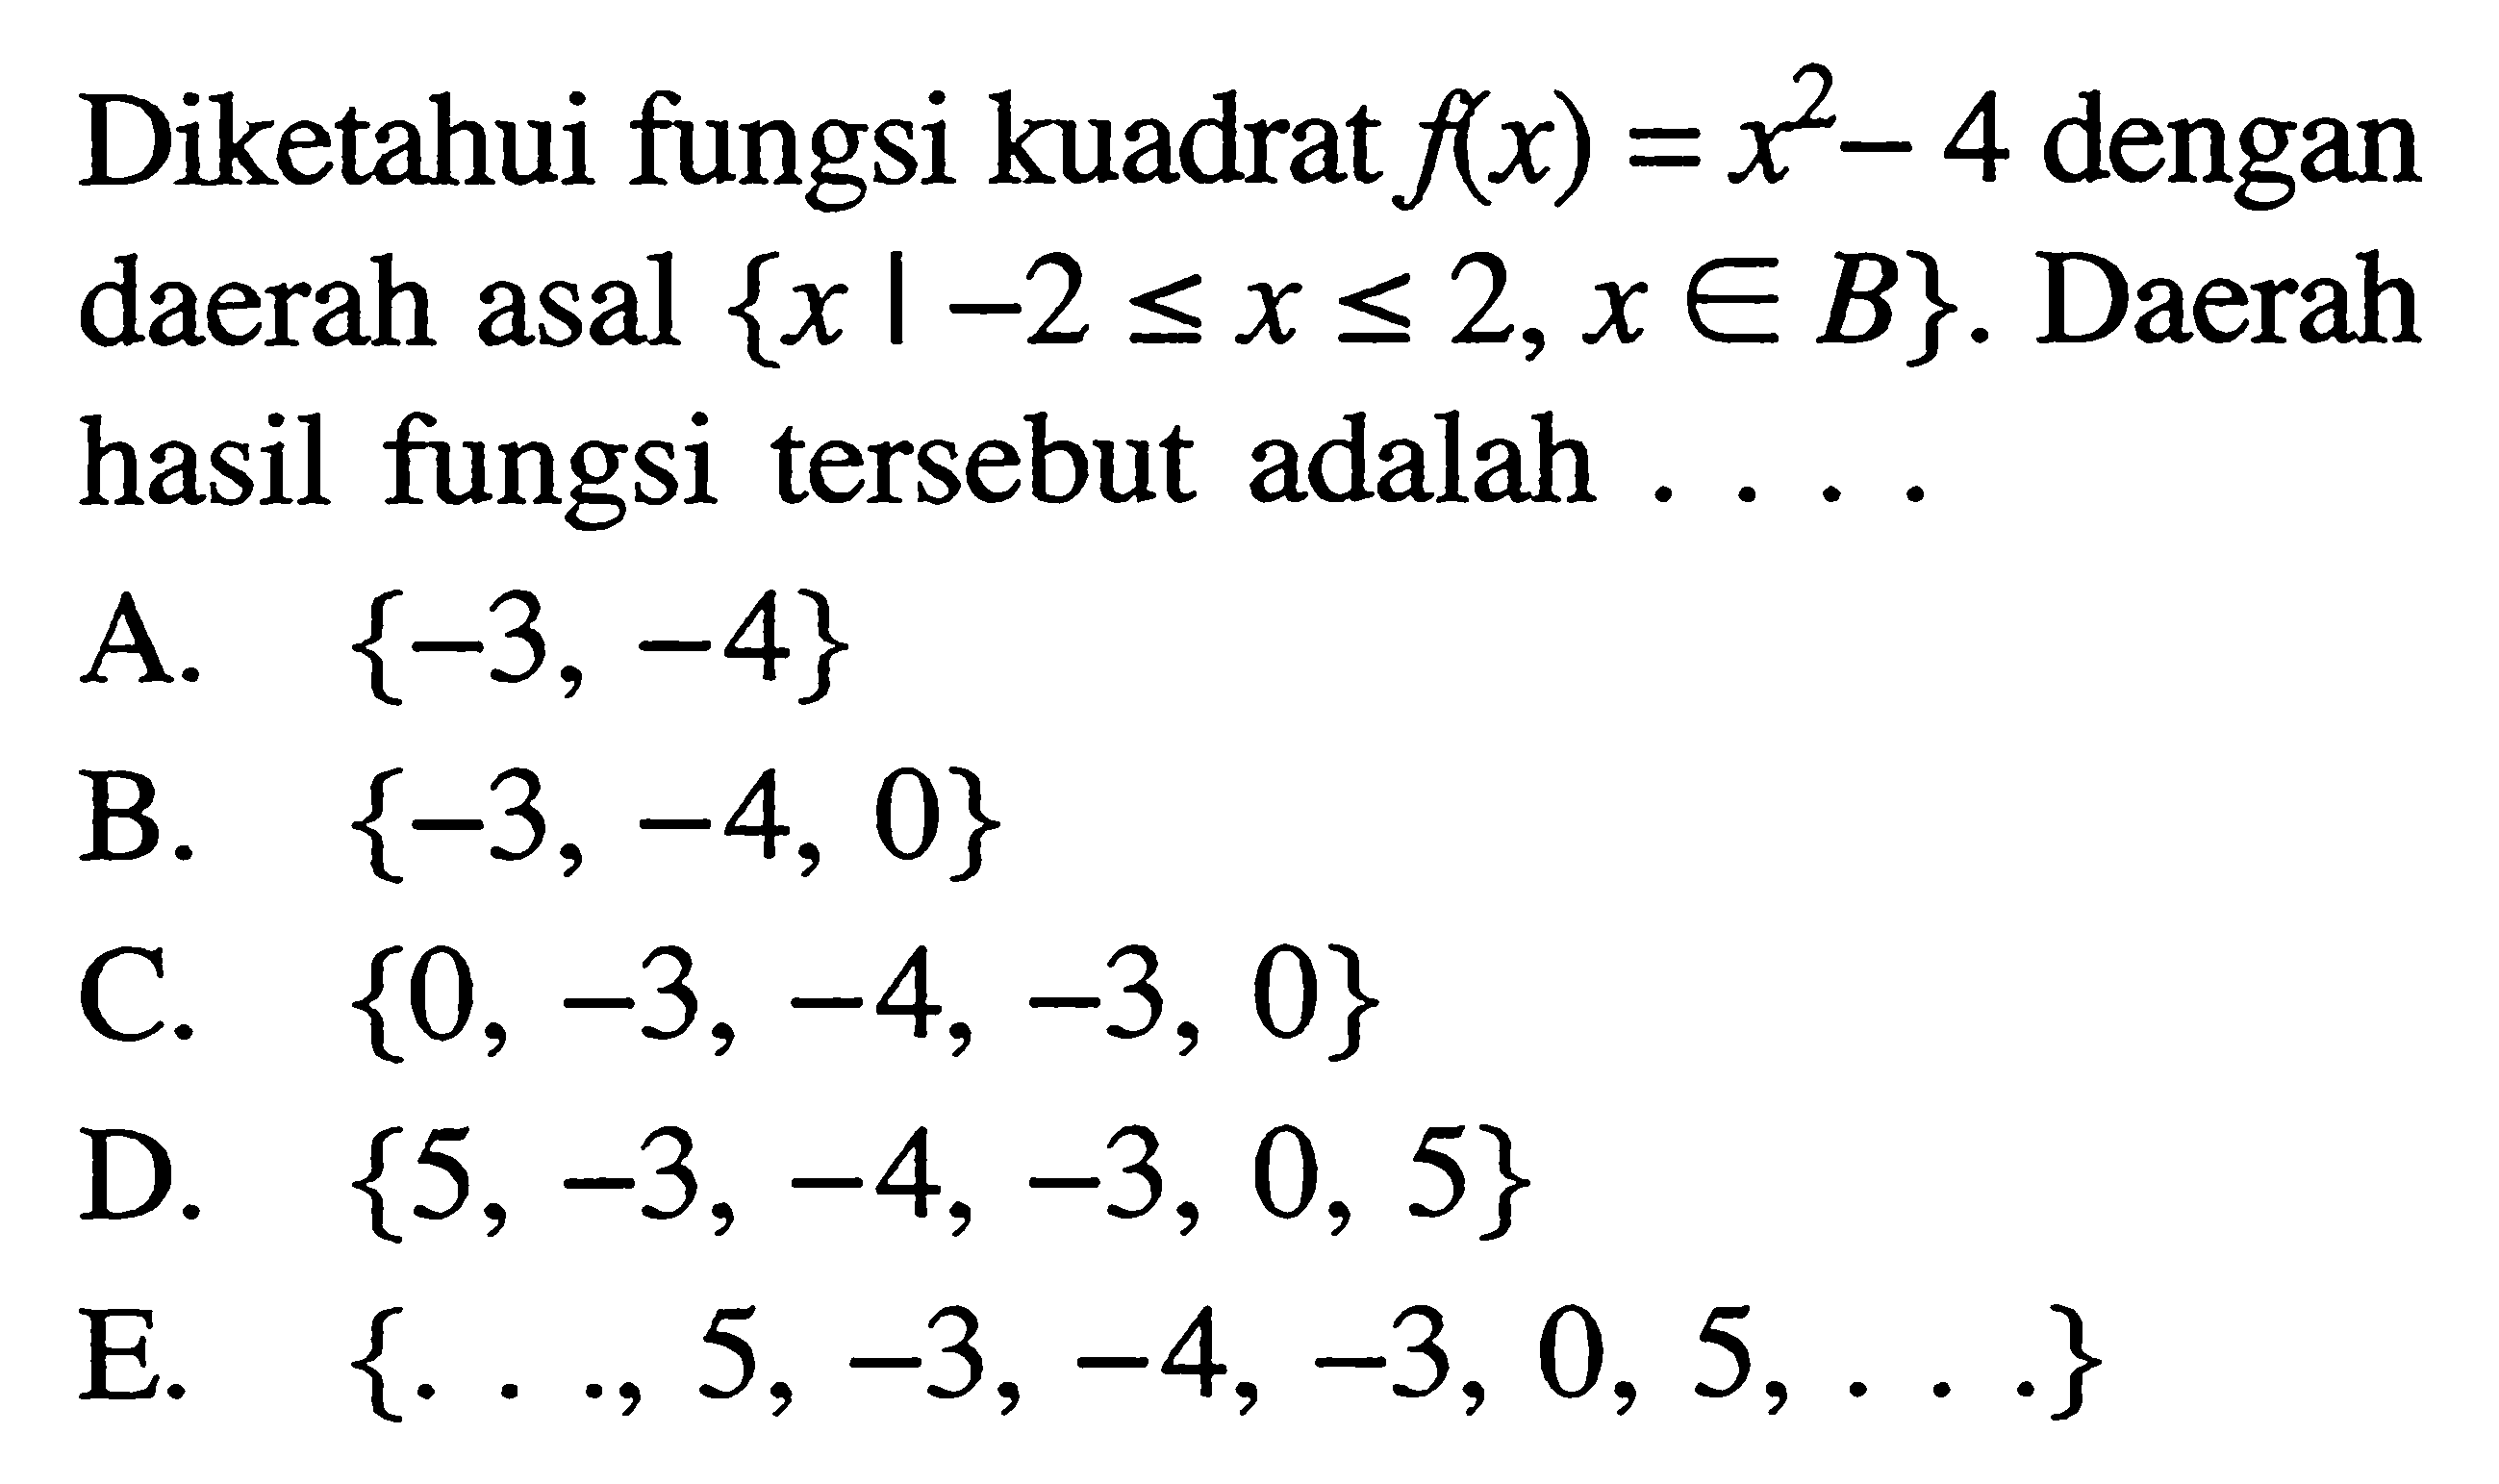 Diketahui fungsi kuadrat f(x)=x^2-4 dengan daerah asal x|-2 <=x<=2, x e B. Daerah hasil fungsi tersebut adalah...